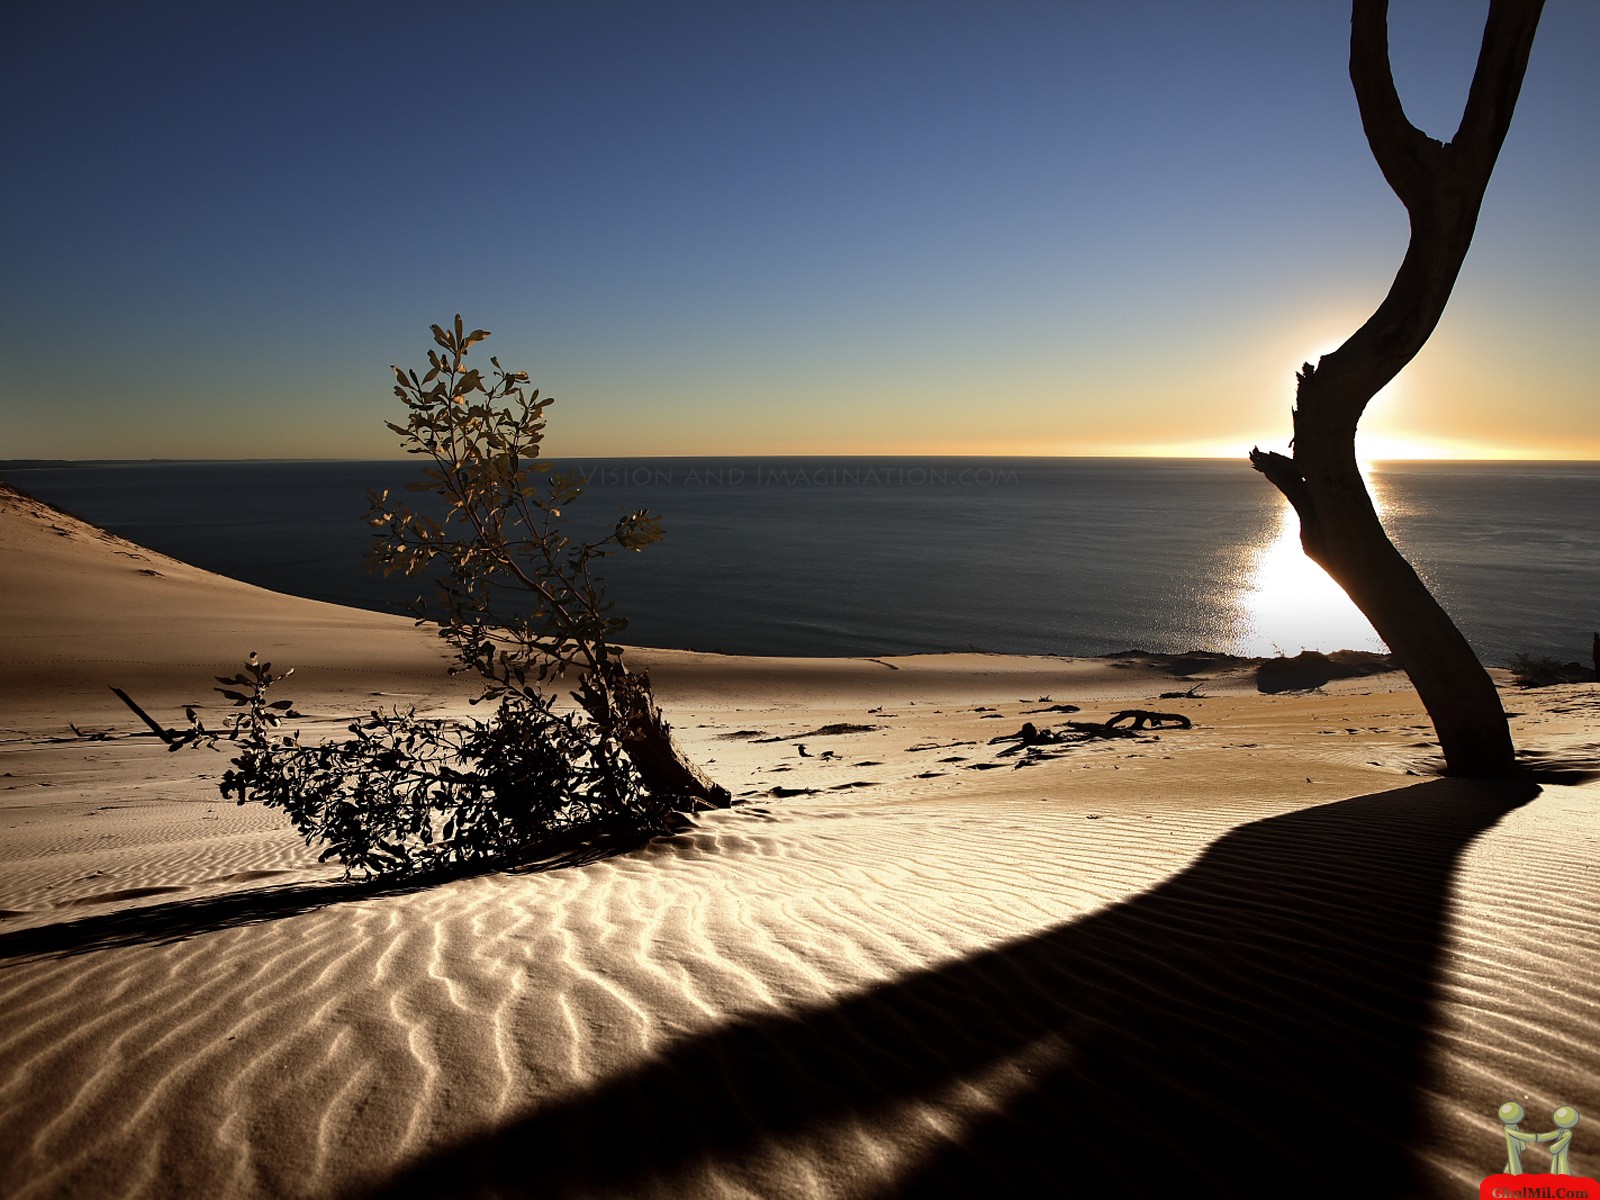 Desert Scenery Landscape HD Desktop Wallpapers – HD Wallpapers ...